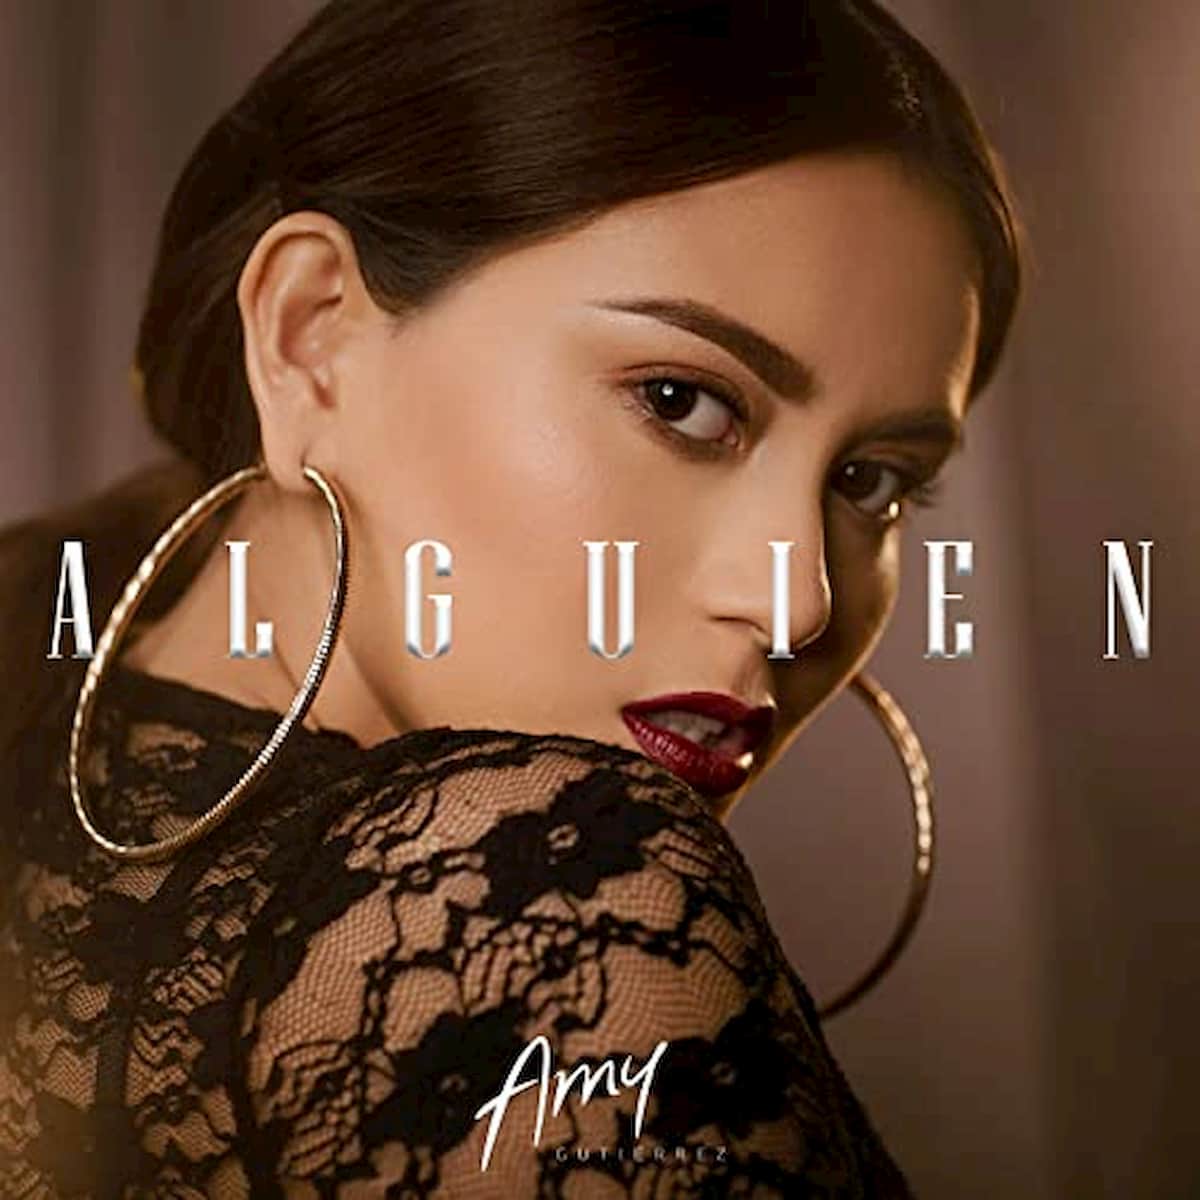 Amy Gutierrez 2020 - hier im Bild das Cover zur Salsa-Version ihre Hits “Alguien”